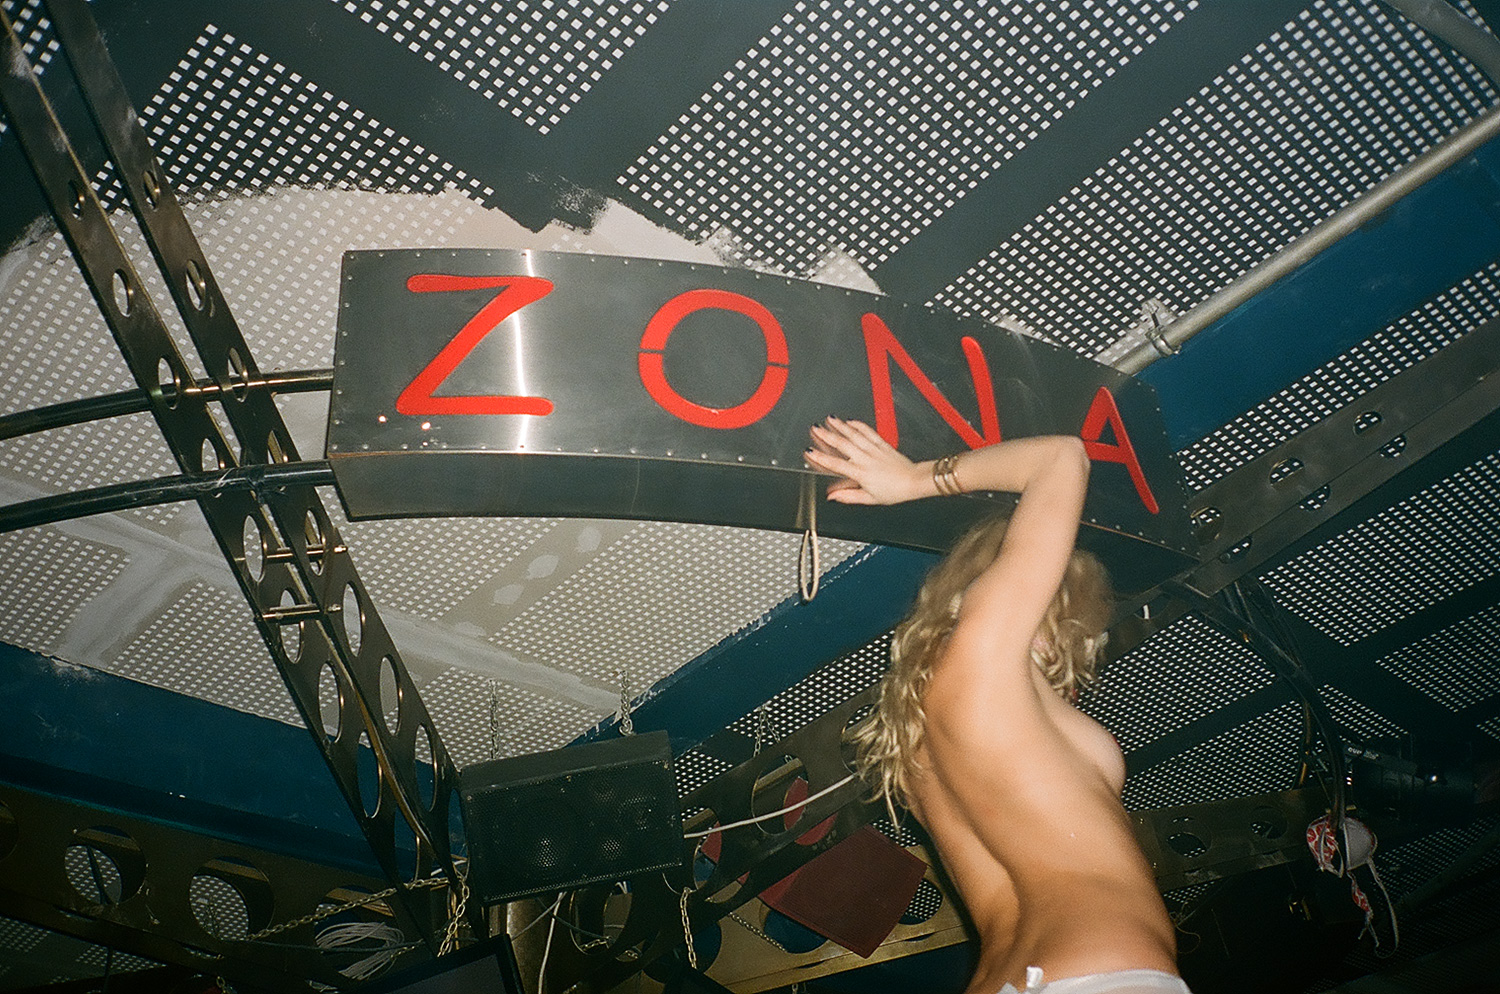 В клубе Zona обнаженные девушки — такая же привычная деталь интерьера, как стол или шкаф